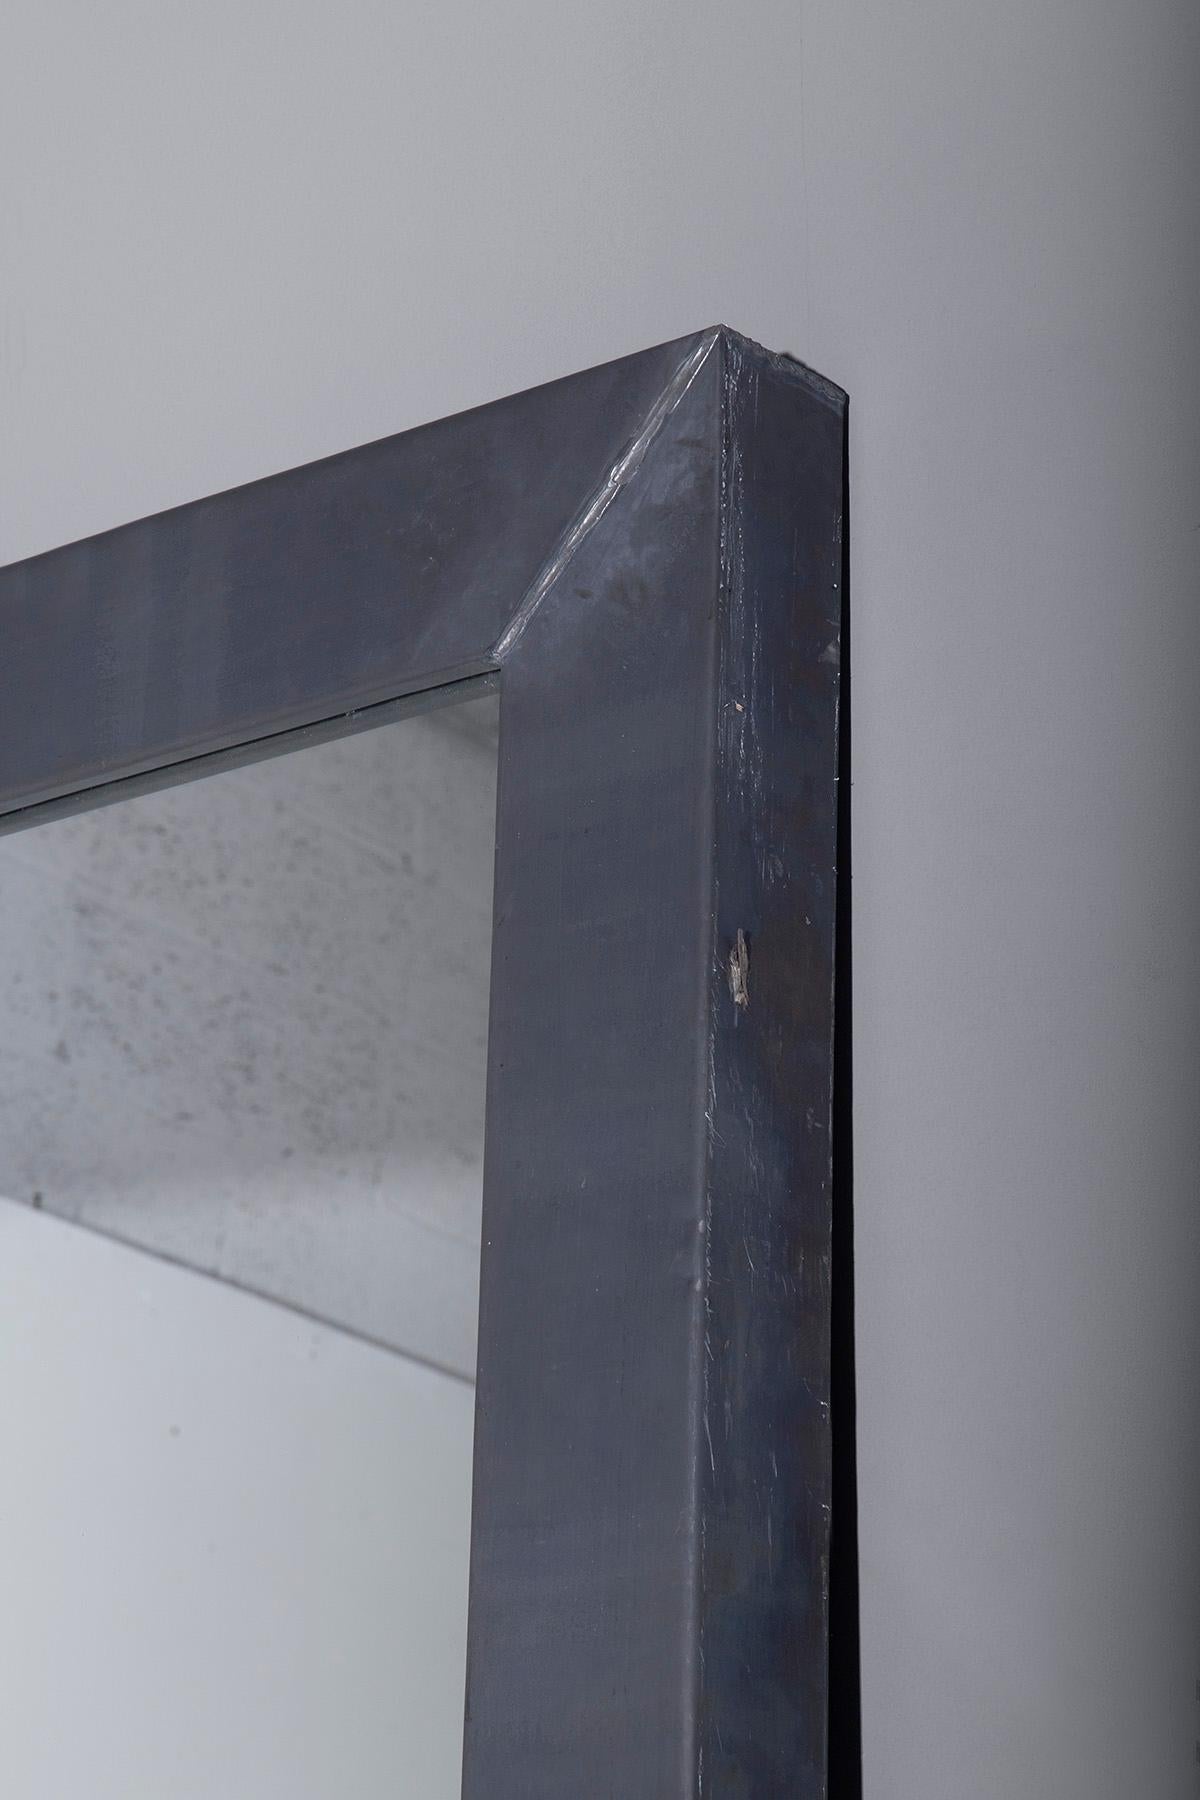 Réfléchissez à l'élégance contemporaine avec cet imposant miroir Boffi, spécimen du design italien récent imprégné de l'esprit d'innovation des années 2010. Encadré d'un épais acier délibérément minimaliste, ce miroir rectangulaire témoigne de la